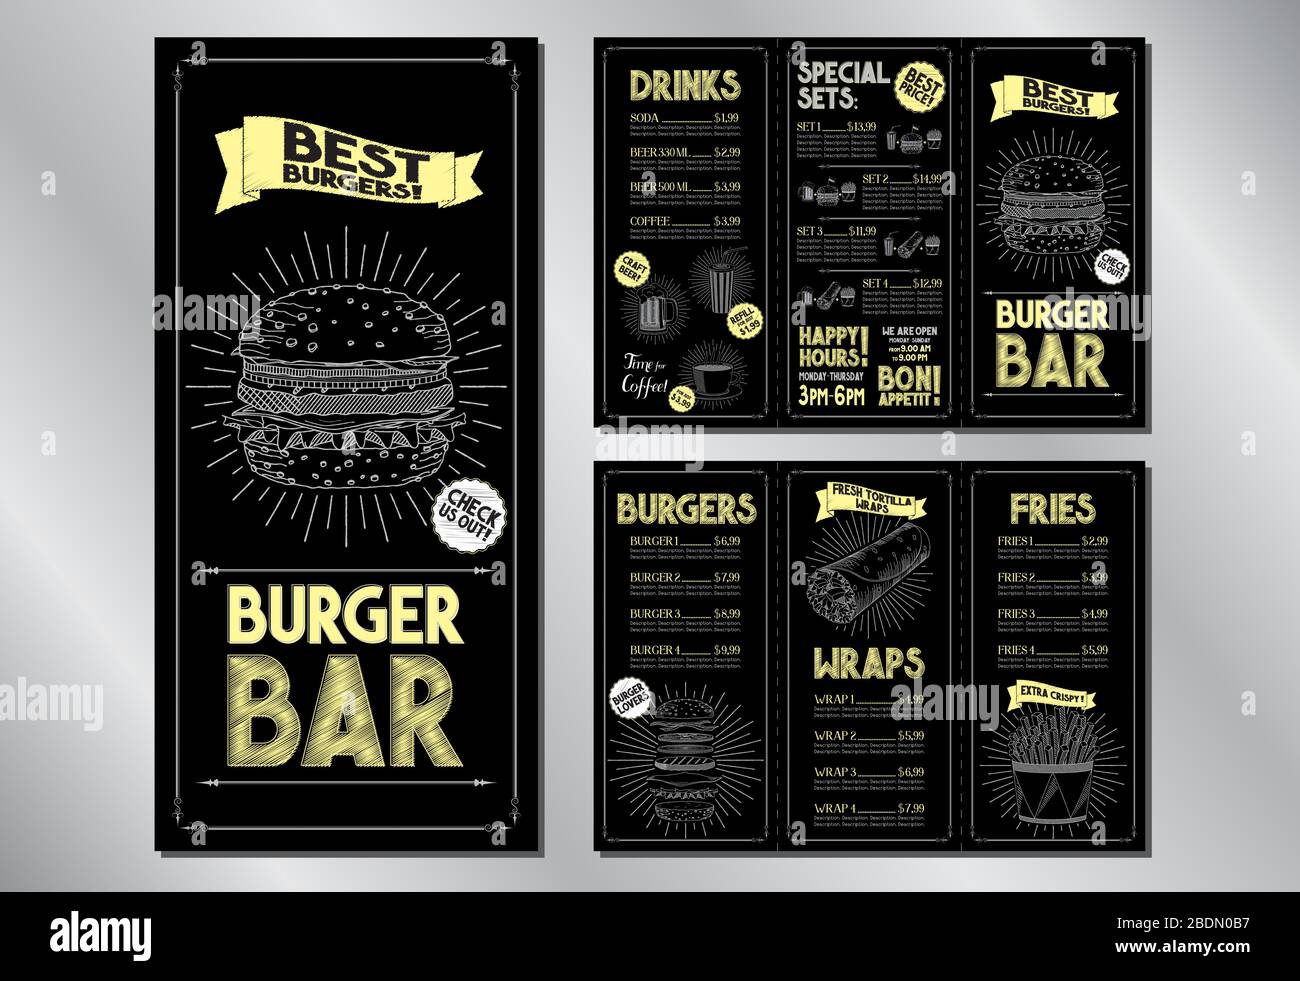 Modèle de brochure du menu du bar Burger (hamburgers, roulés, frites, boissons, jeux) - 3 x DL (99 x 210 mm) Illustration de Vecteur